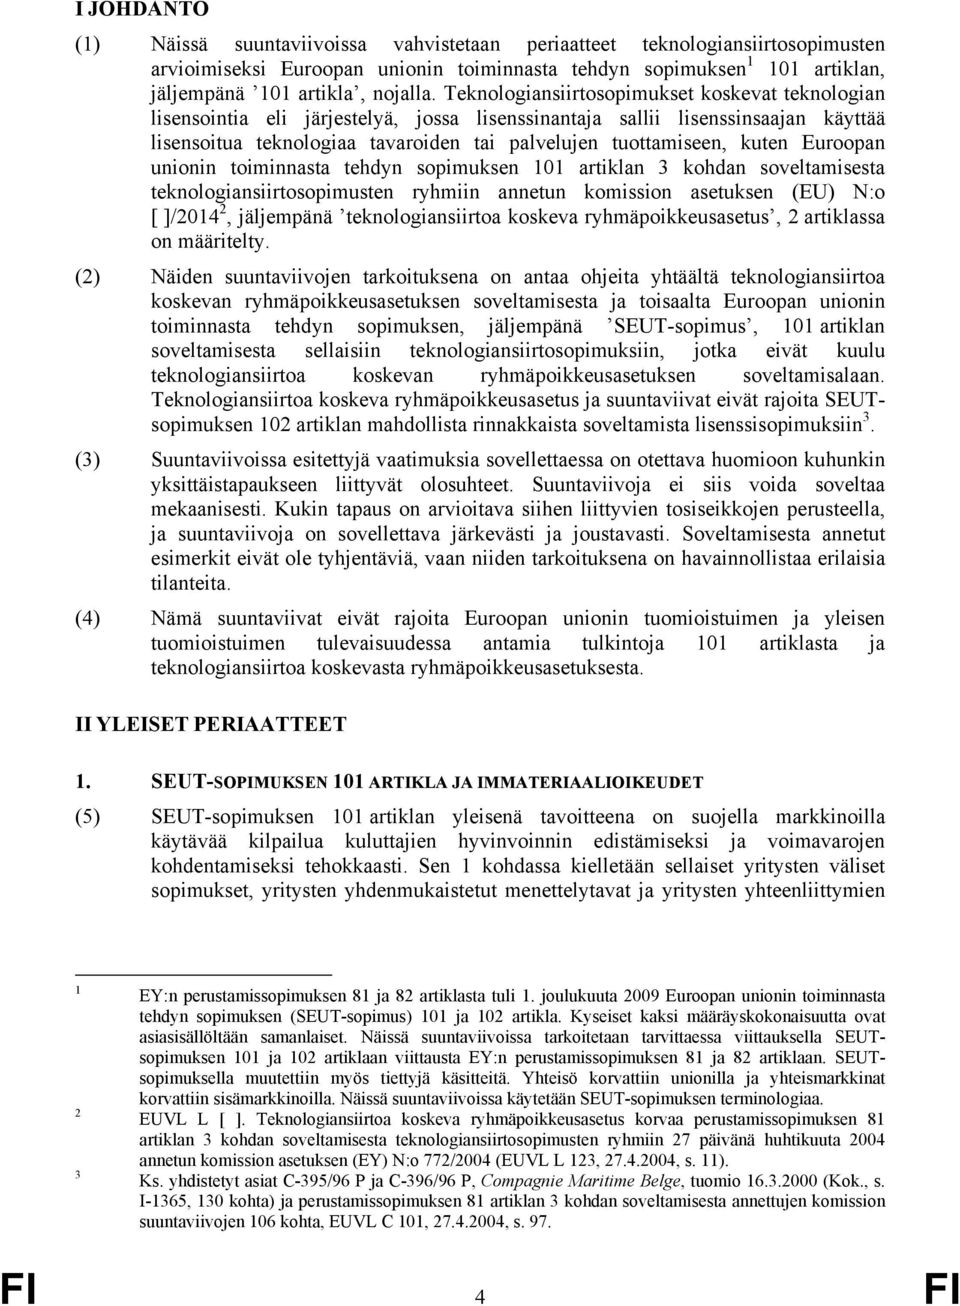 kuten Euroopan unionin toiminnasta tehdyn sopimuksen 101 artiklan 3 kohdan soveltamisesta teknologiansiirtosopimusten ryhmiin annetun komission asetuksen (EU) N:o [ ]/2014 2, jäljempänä